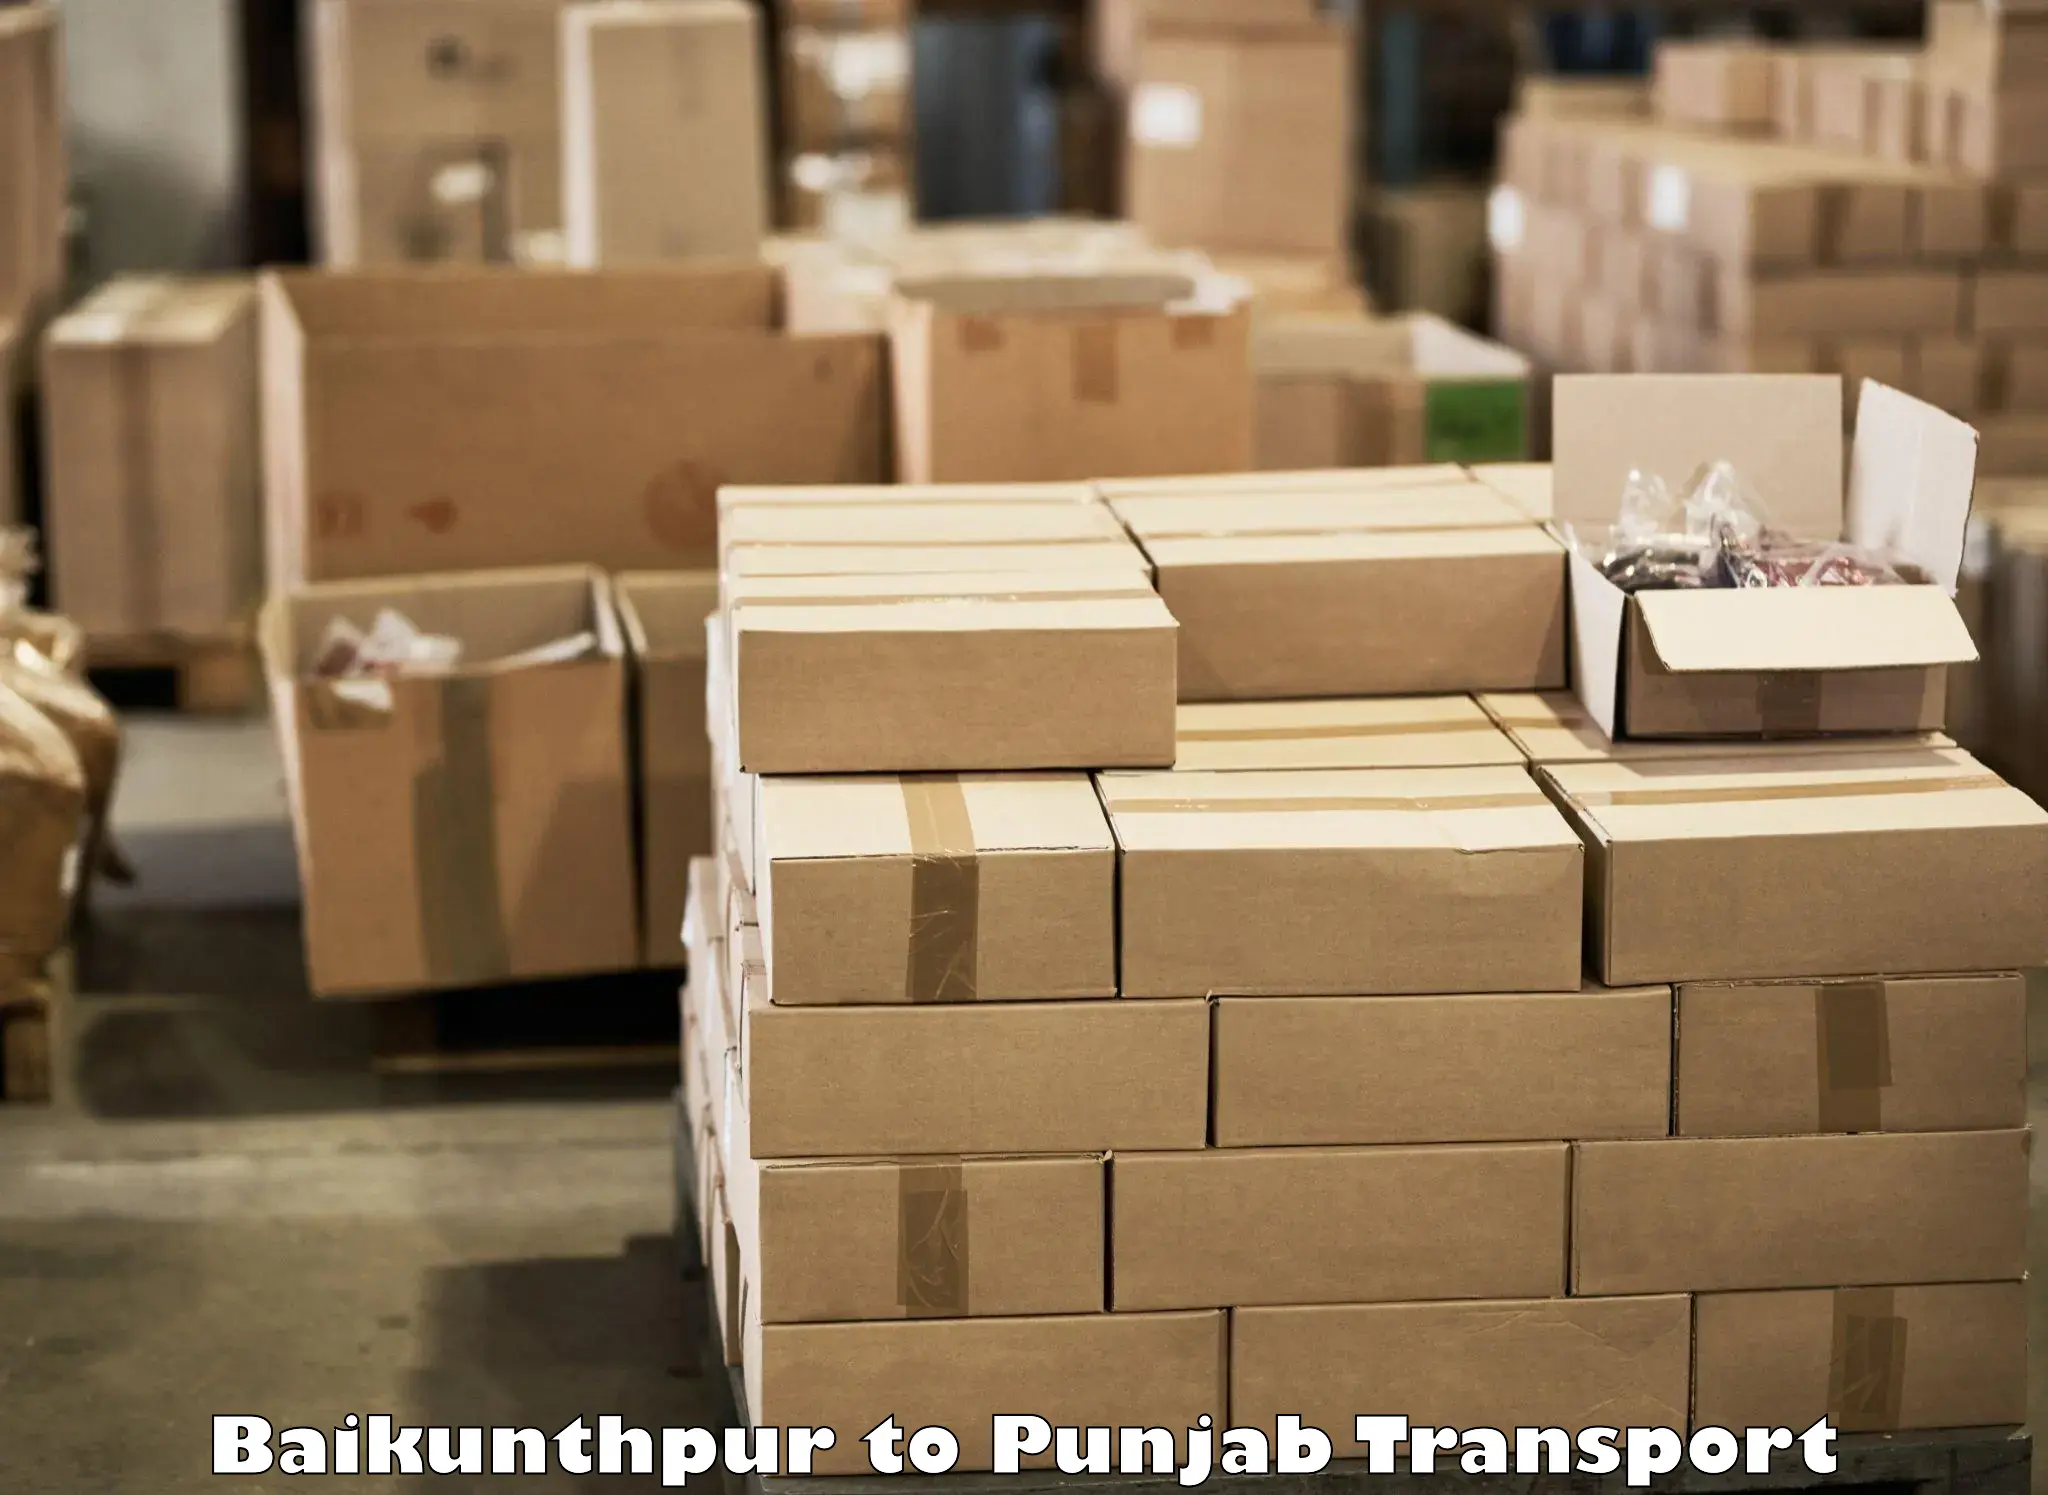 Online transport booking Baikunthpur to Punjab